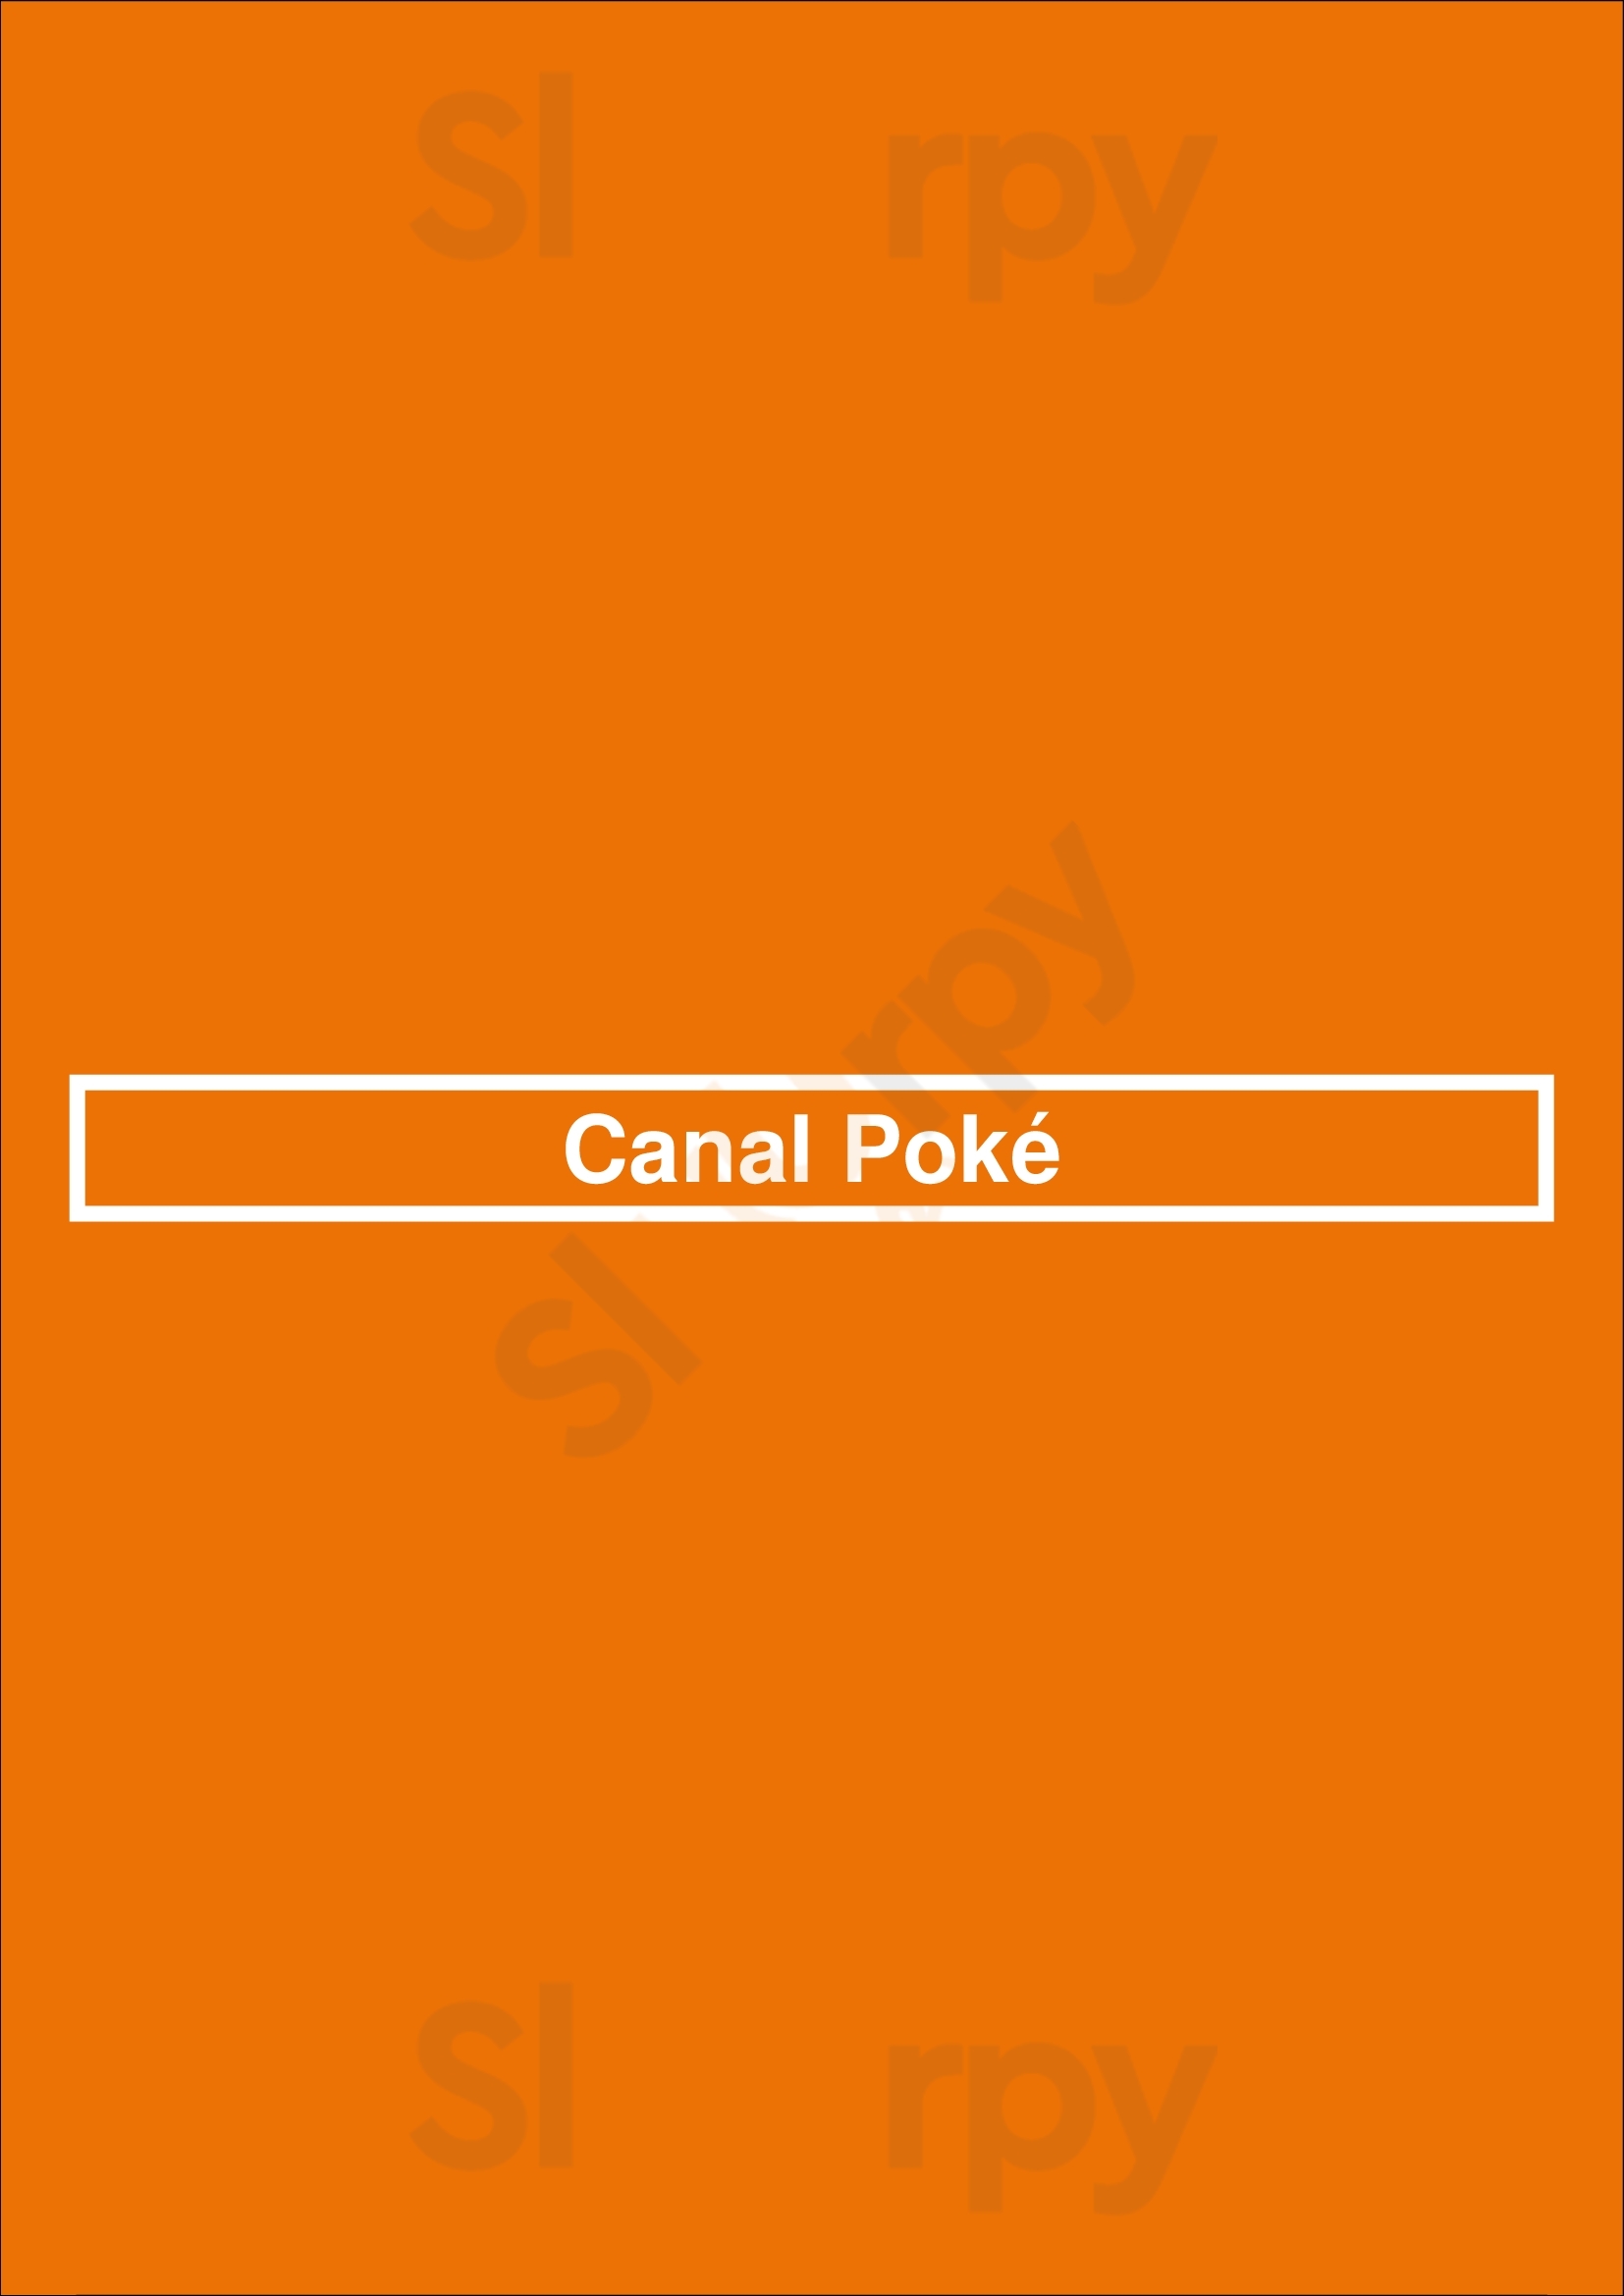 Canal Poké Paris Menu - 1